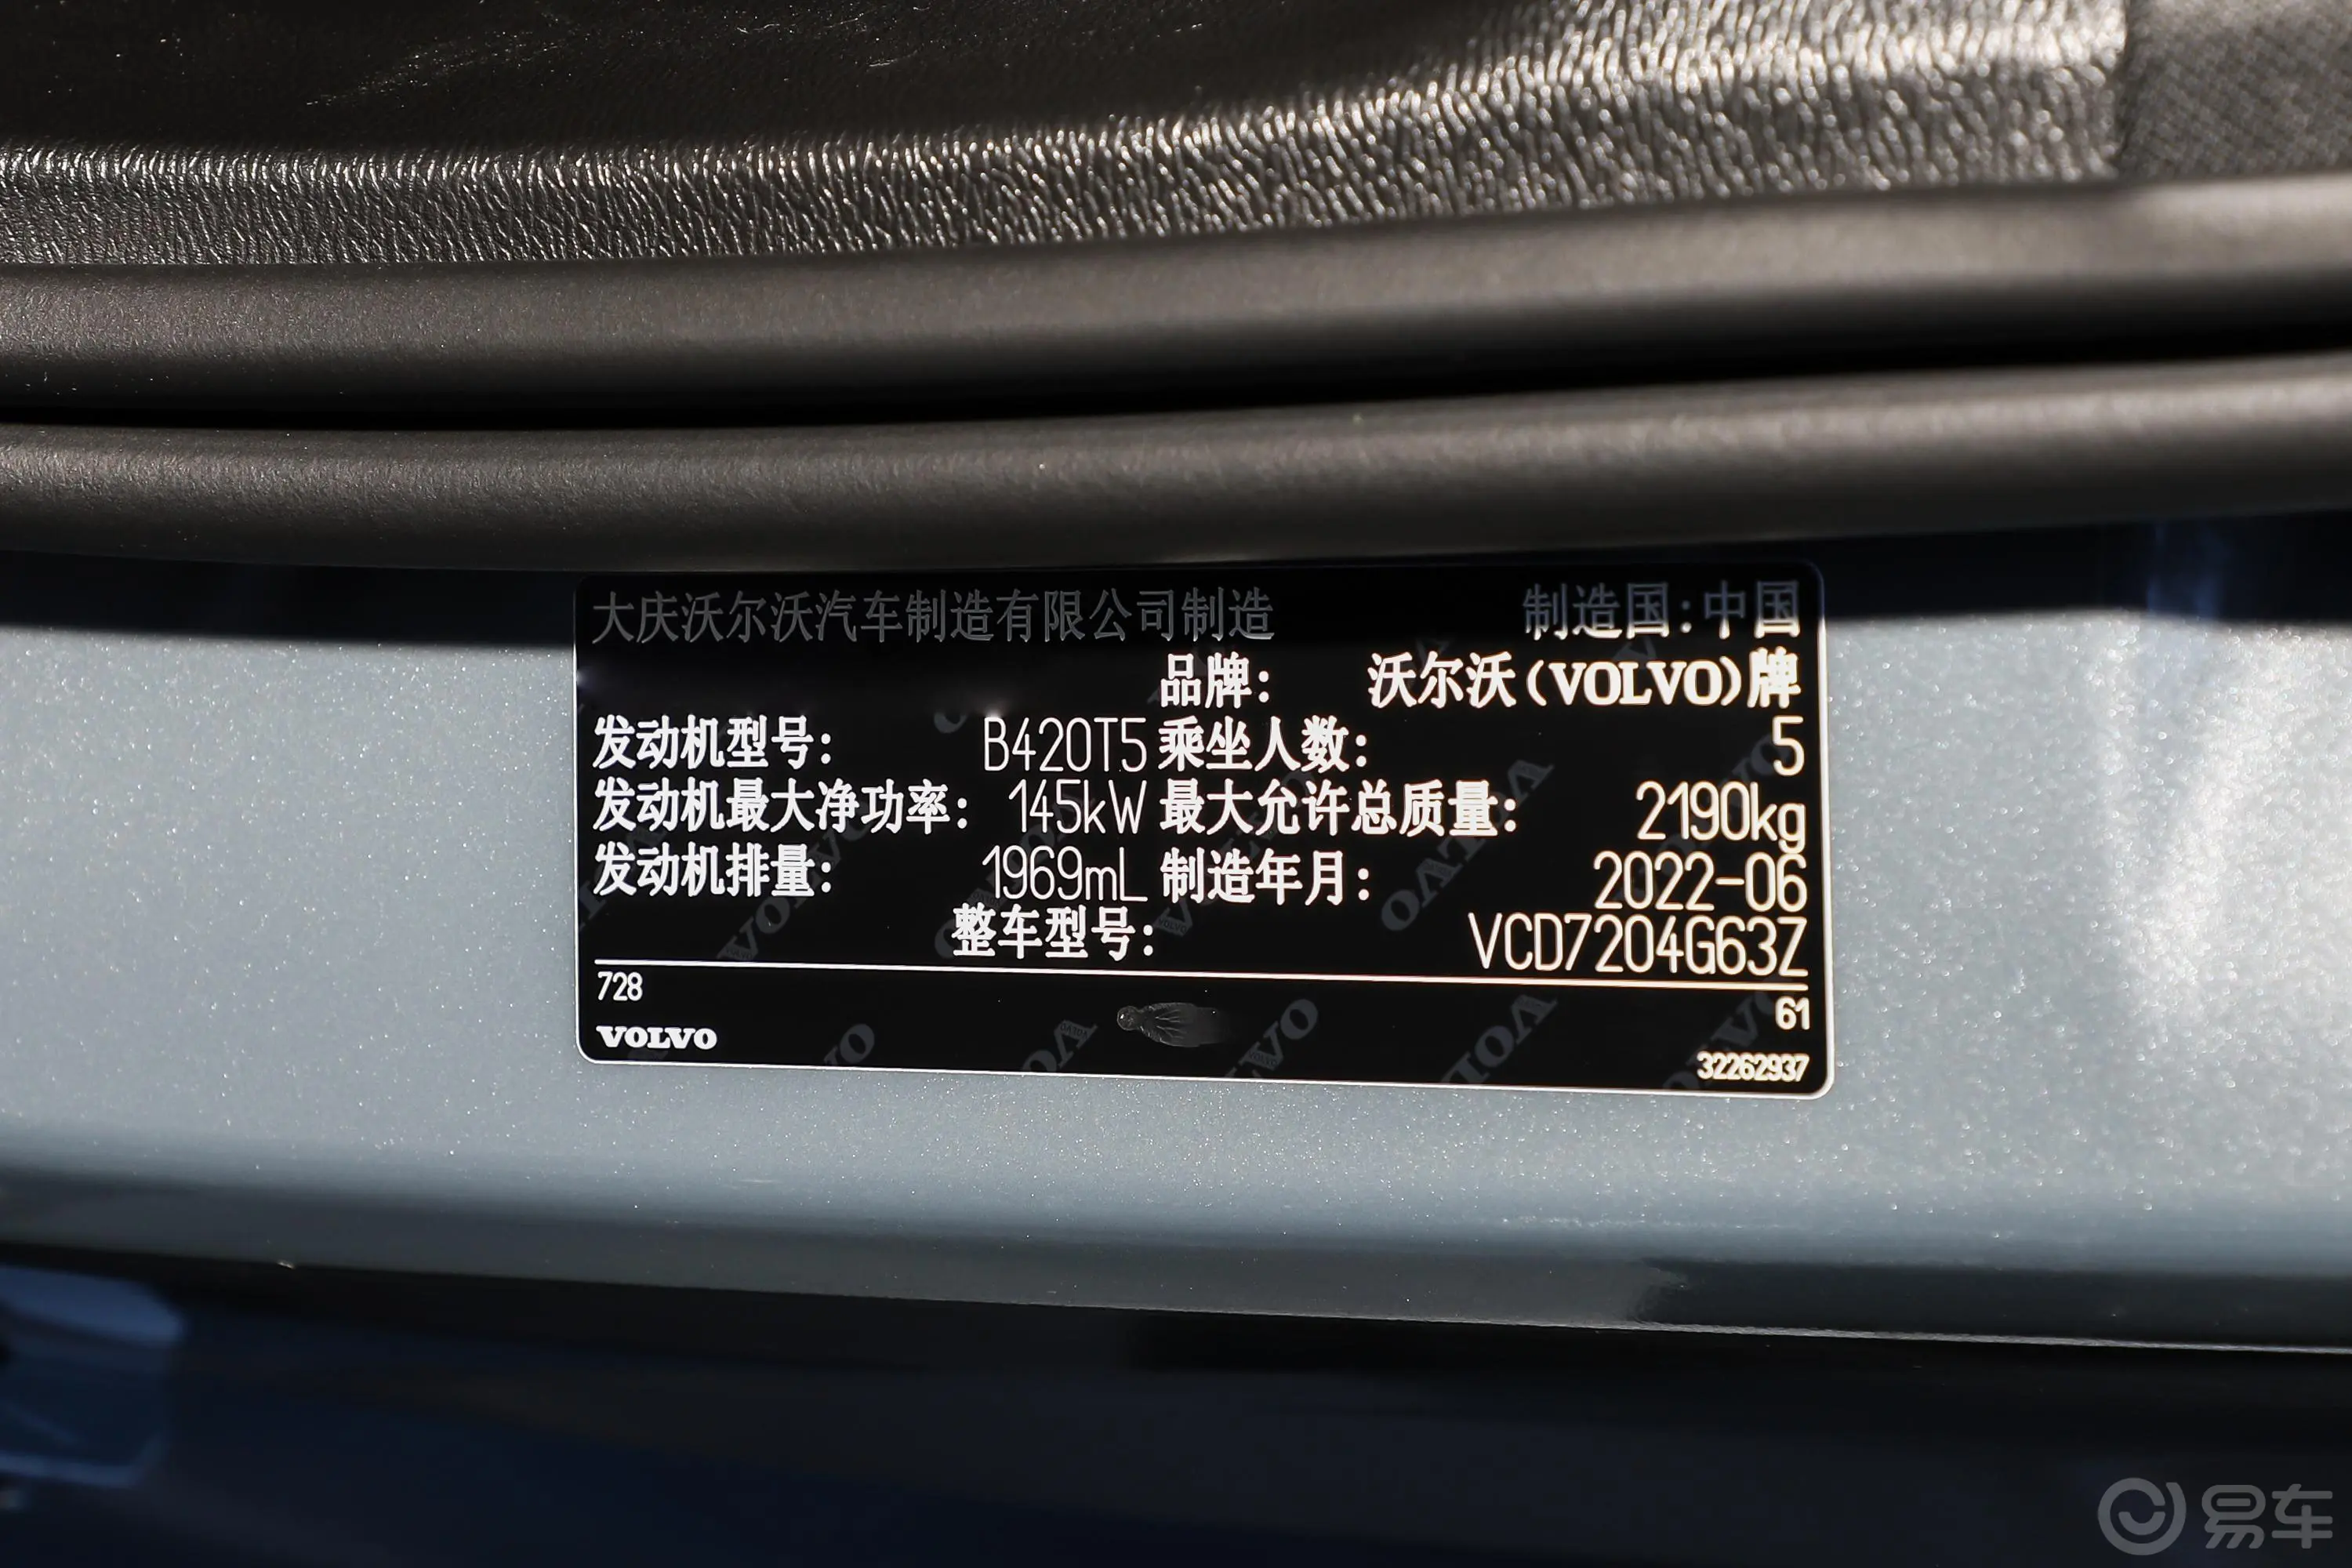 沃尔沃S60B4 智远豪华版车辆信息铭牌